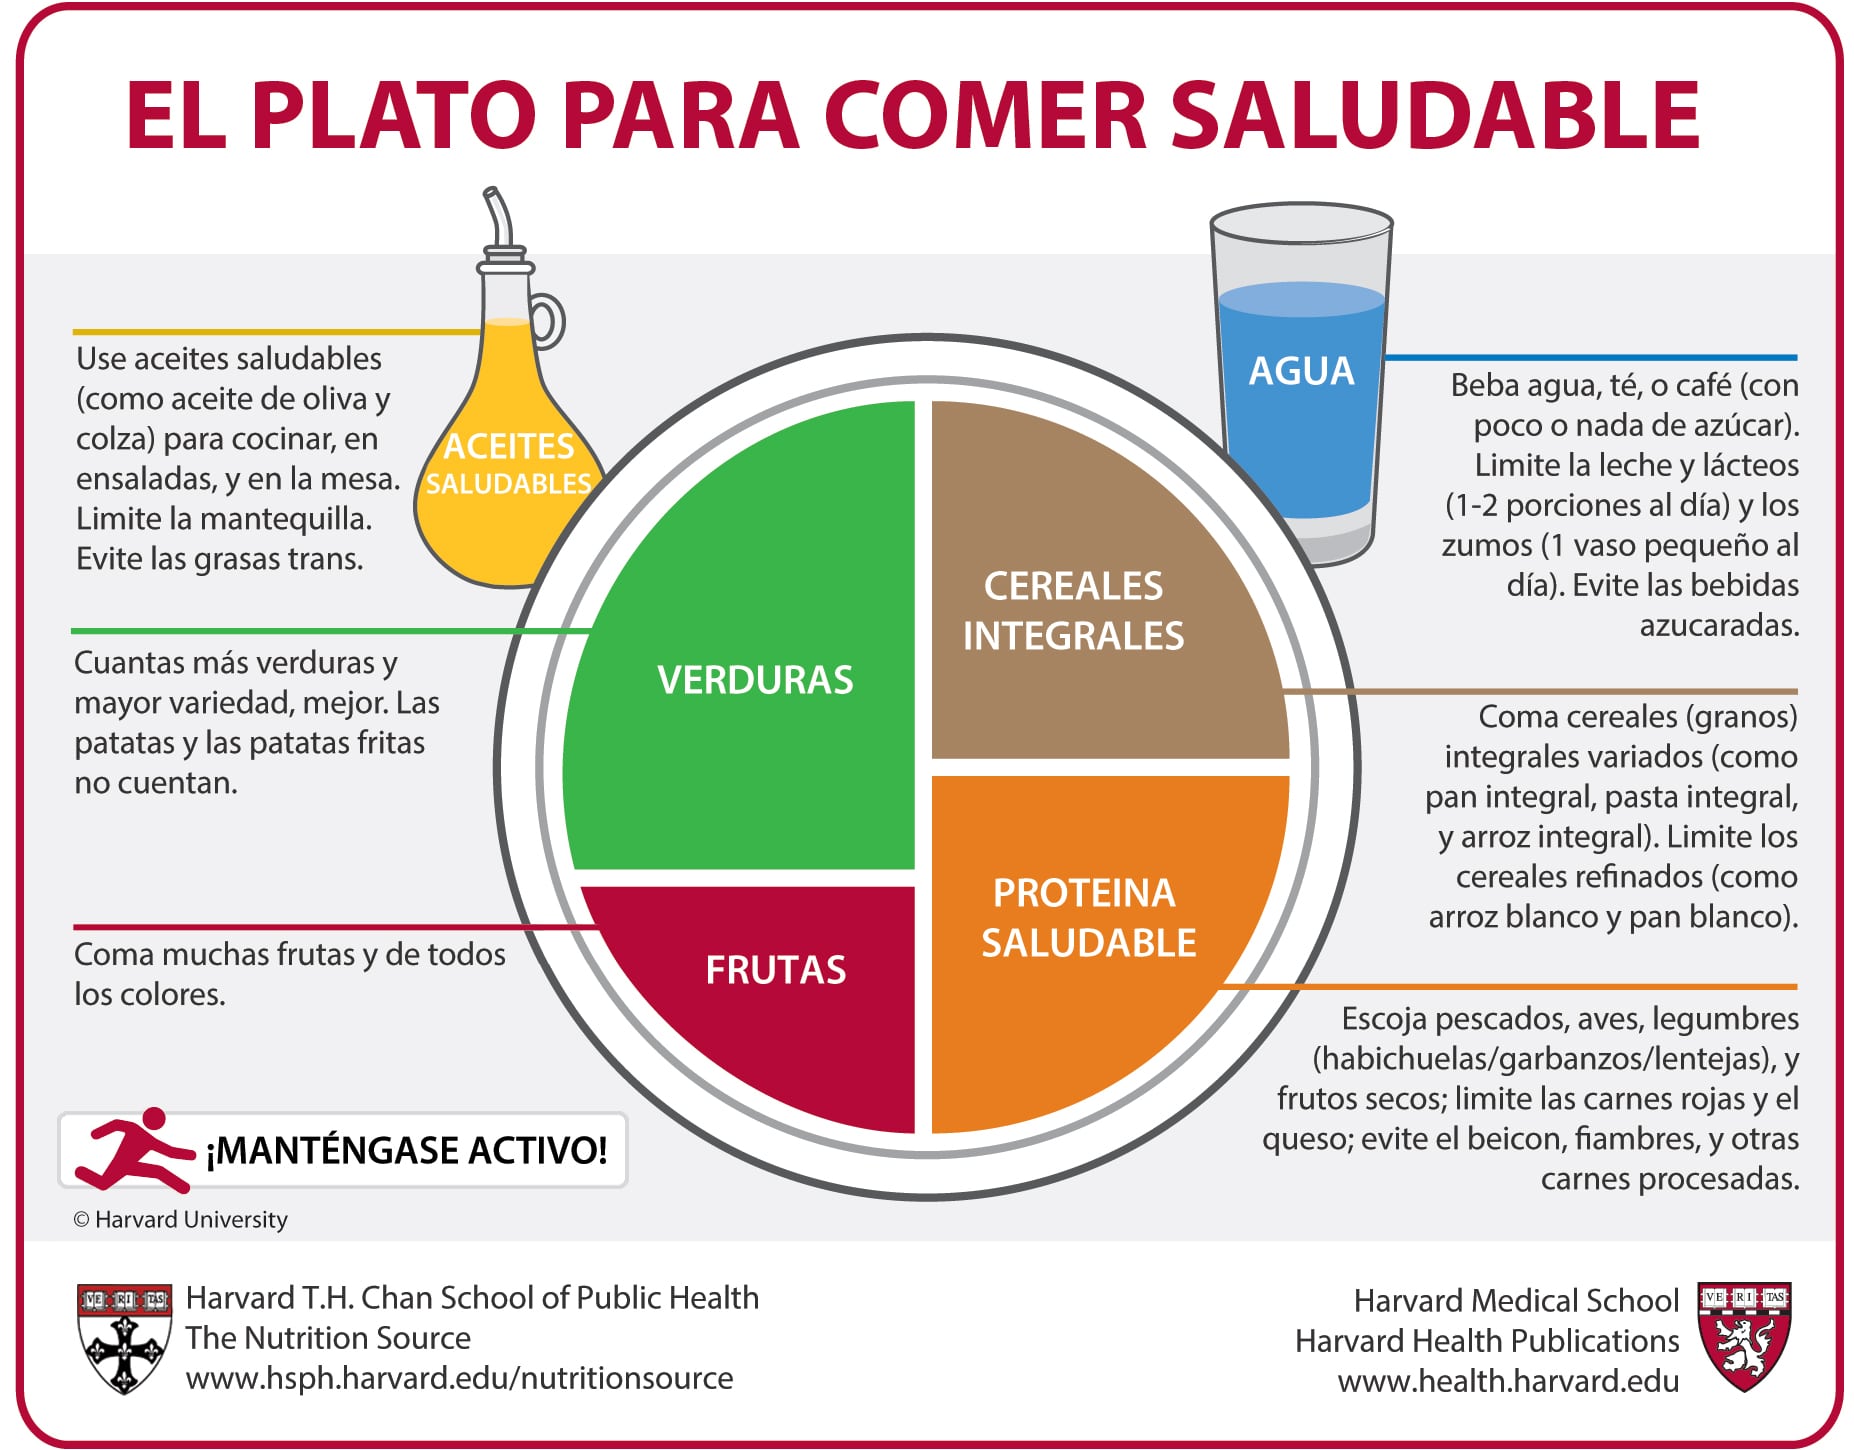 El Plato para Comer Saludable de Harvard